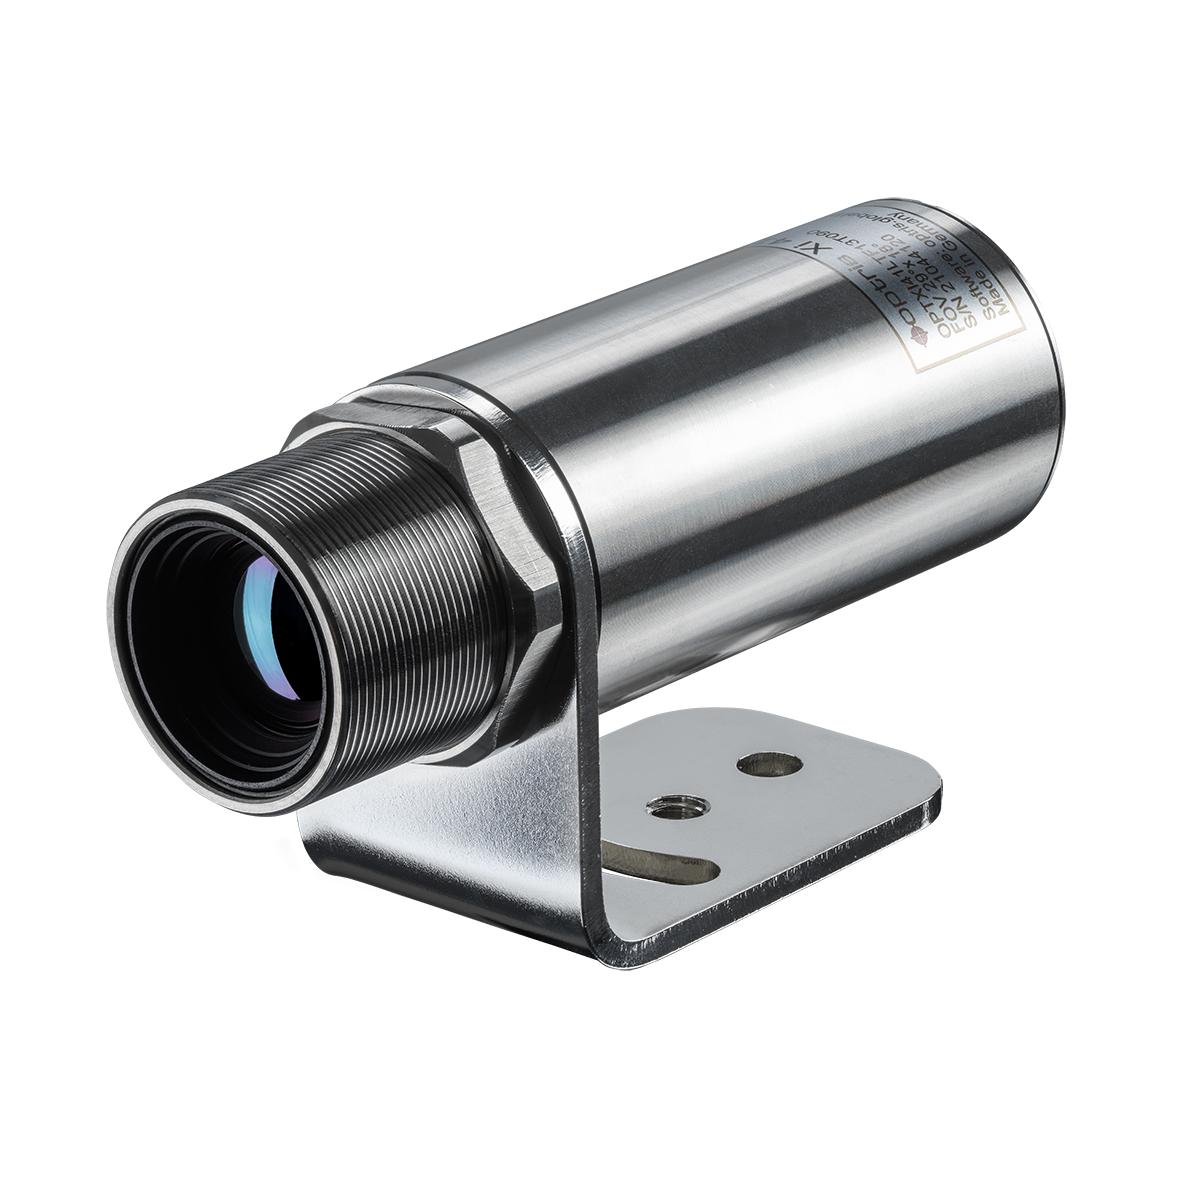 Optris Thermal Imaging Camera, -20 → +900 °C, 384 x 240pixel Detector Resolution